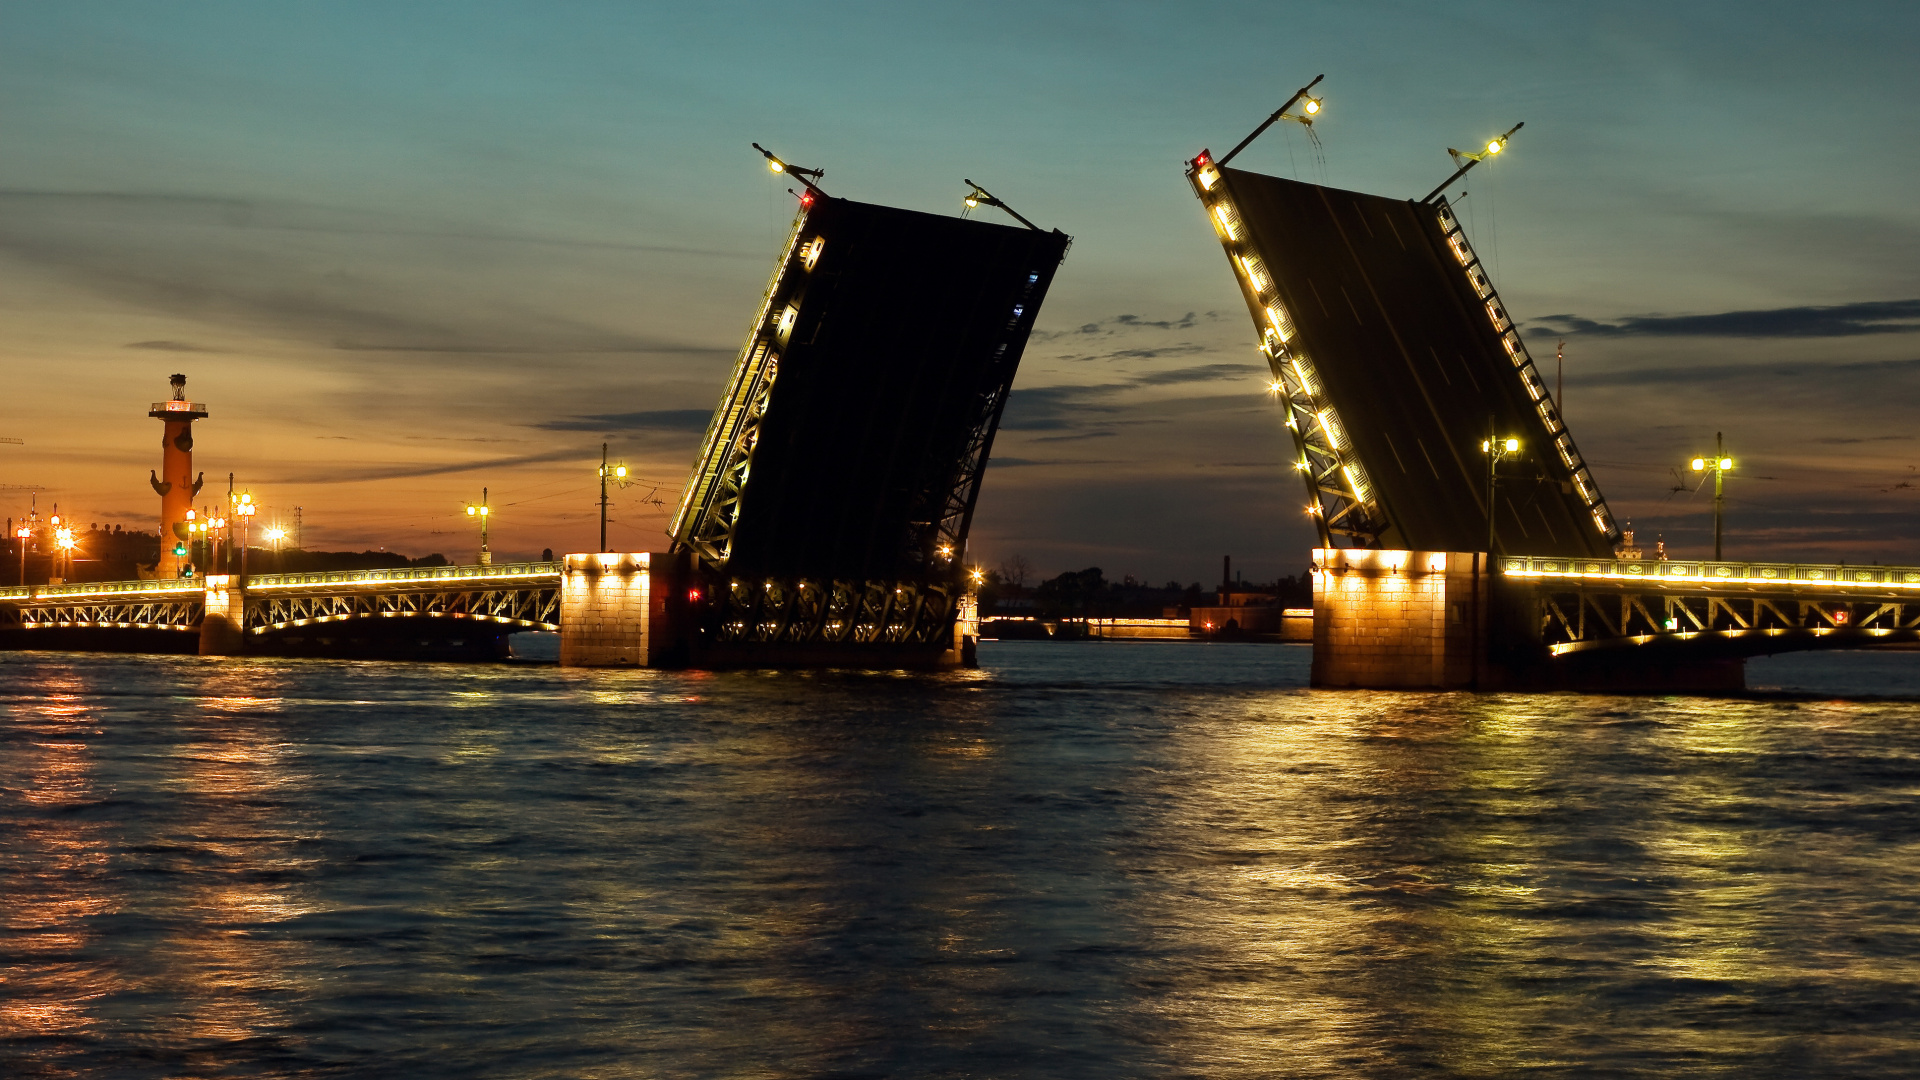 瓦河, 晚上, 可移动座桥, 黄昏, 猩红色的帆 壁纸 1920x1080 允许